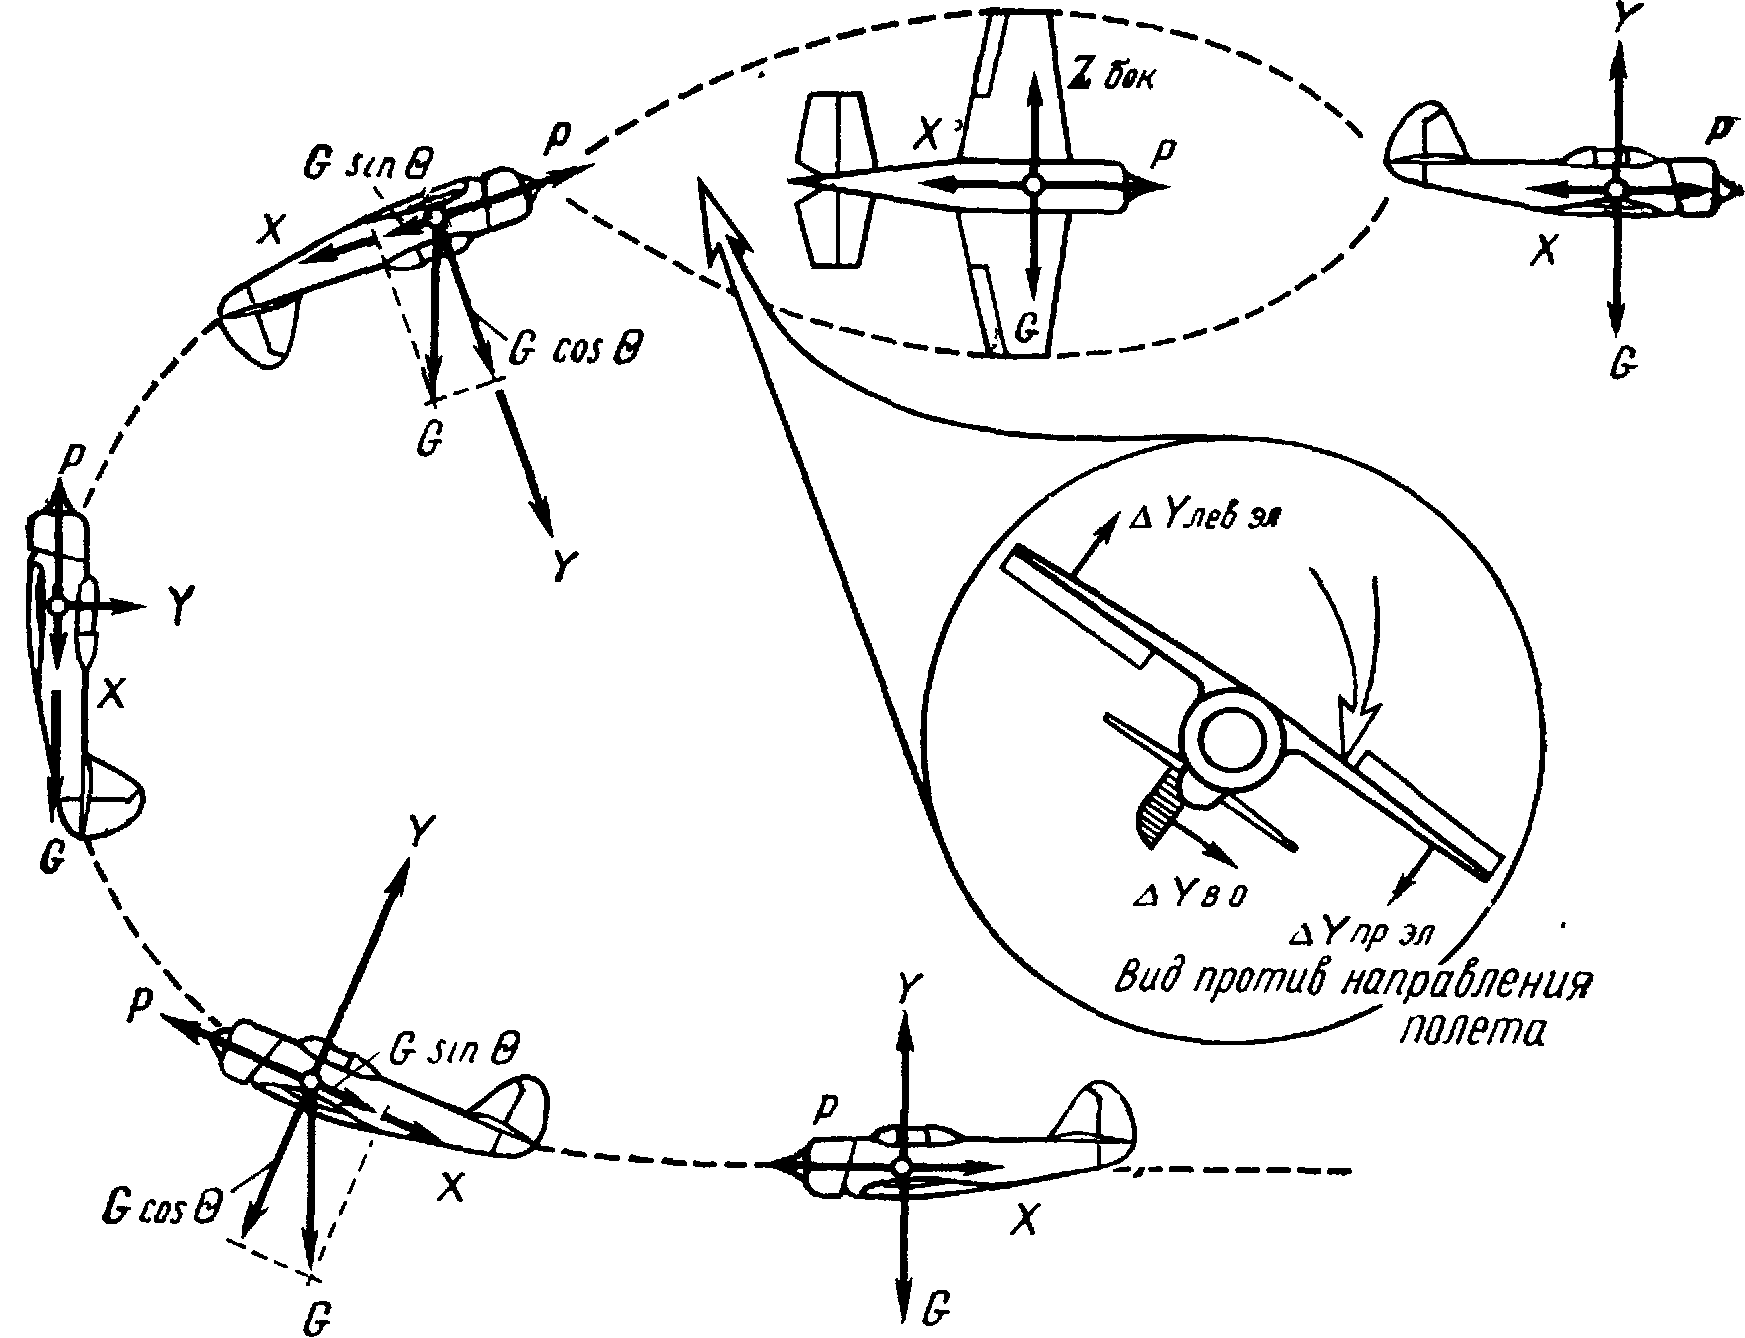 Фигуры высшего пилотажа с названиями схемы